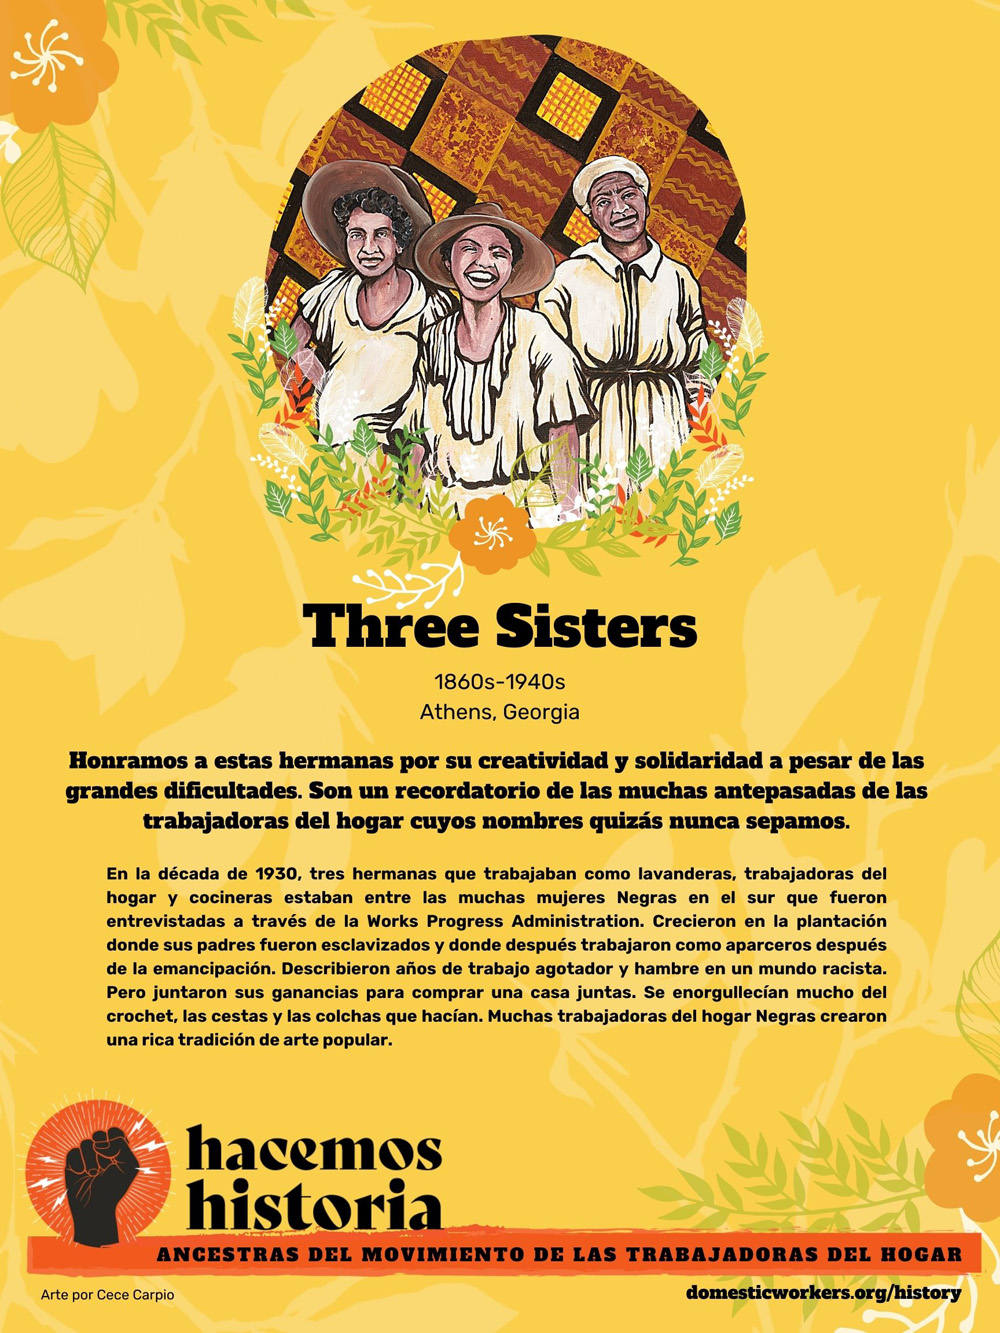 Retratos de las ancestras del movimiento de trabajadoras de hogar: Three Sisters